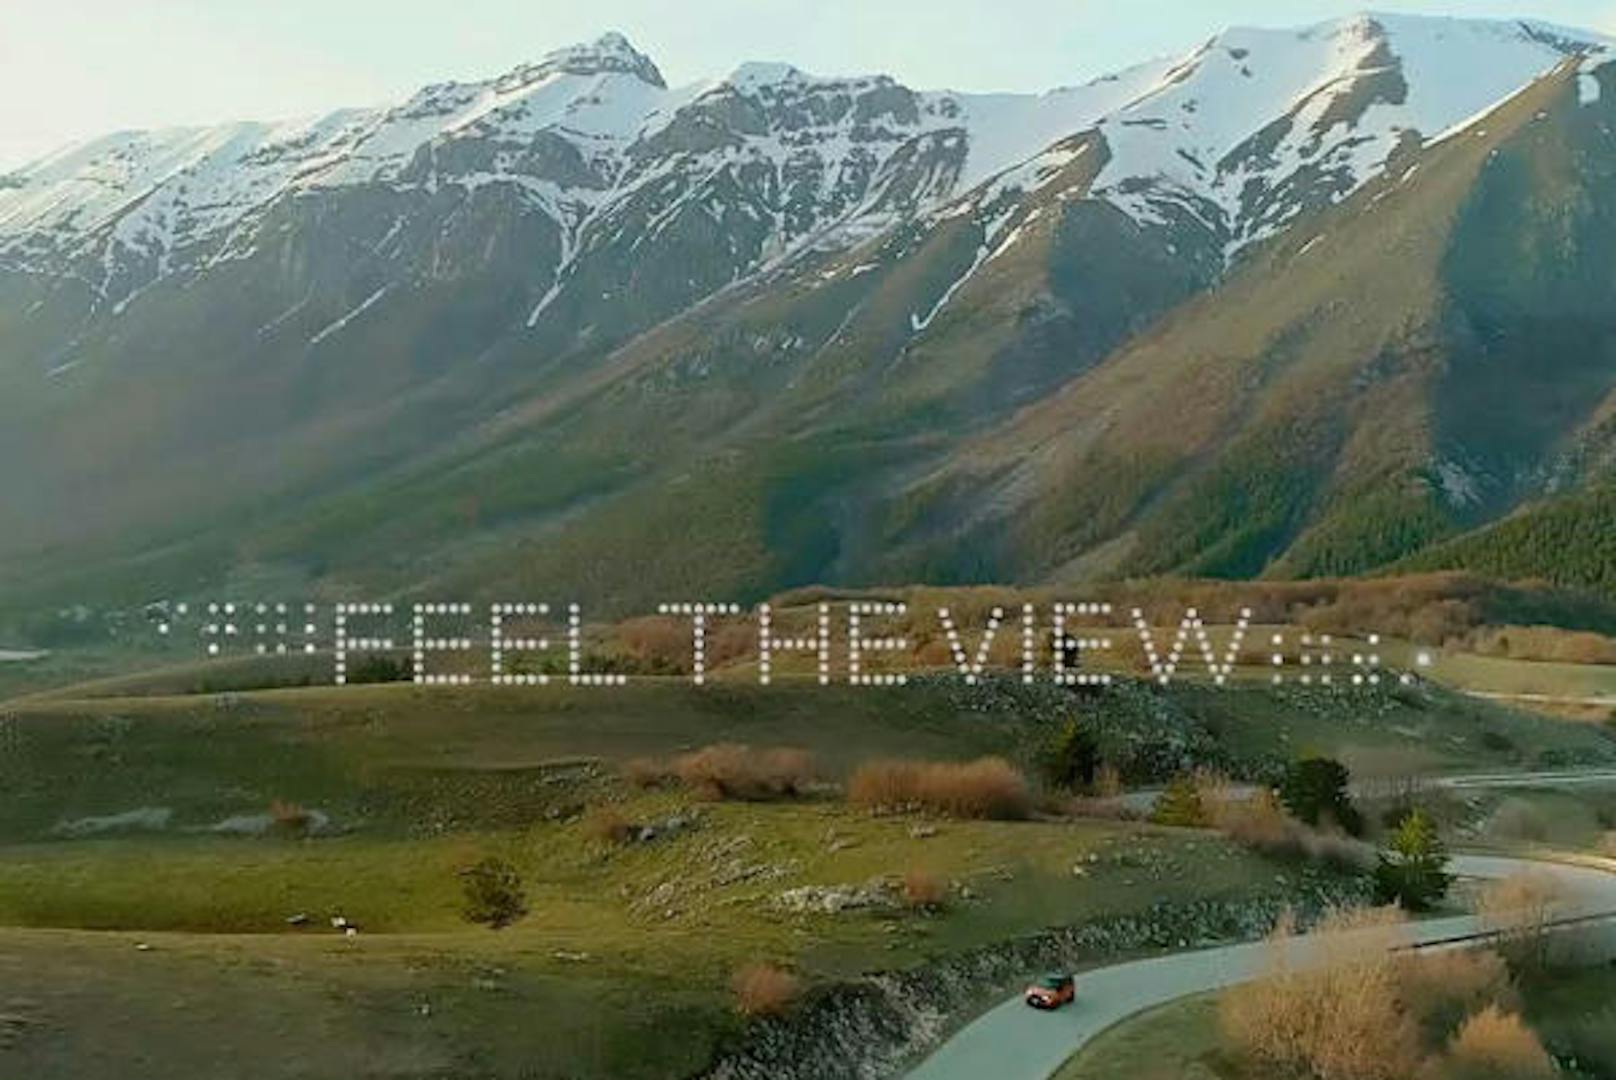 Das intelligente Autofenster mit dem Namen "Feel The View" erstellt monochrome Bilder mittels einer Digitalkamera. Diese werden in Vibrationen übersetzt, die auf die Seitenscheibe übertragen werden, um blinden Fahrgästen einen Ausblick mittels Tastsinn zu ermöglichen.